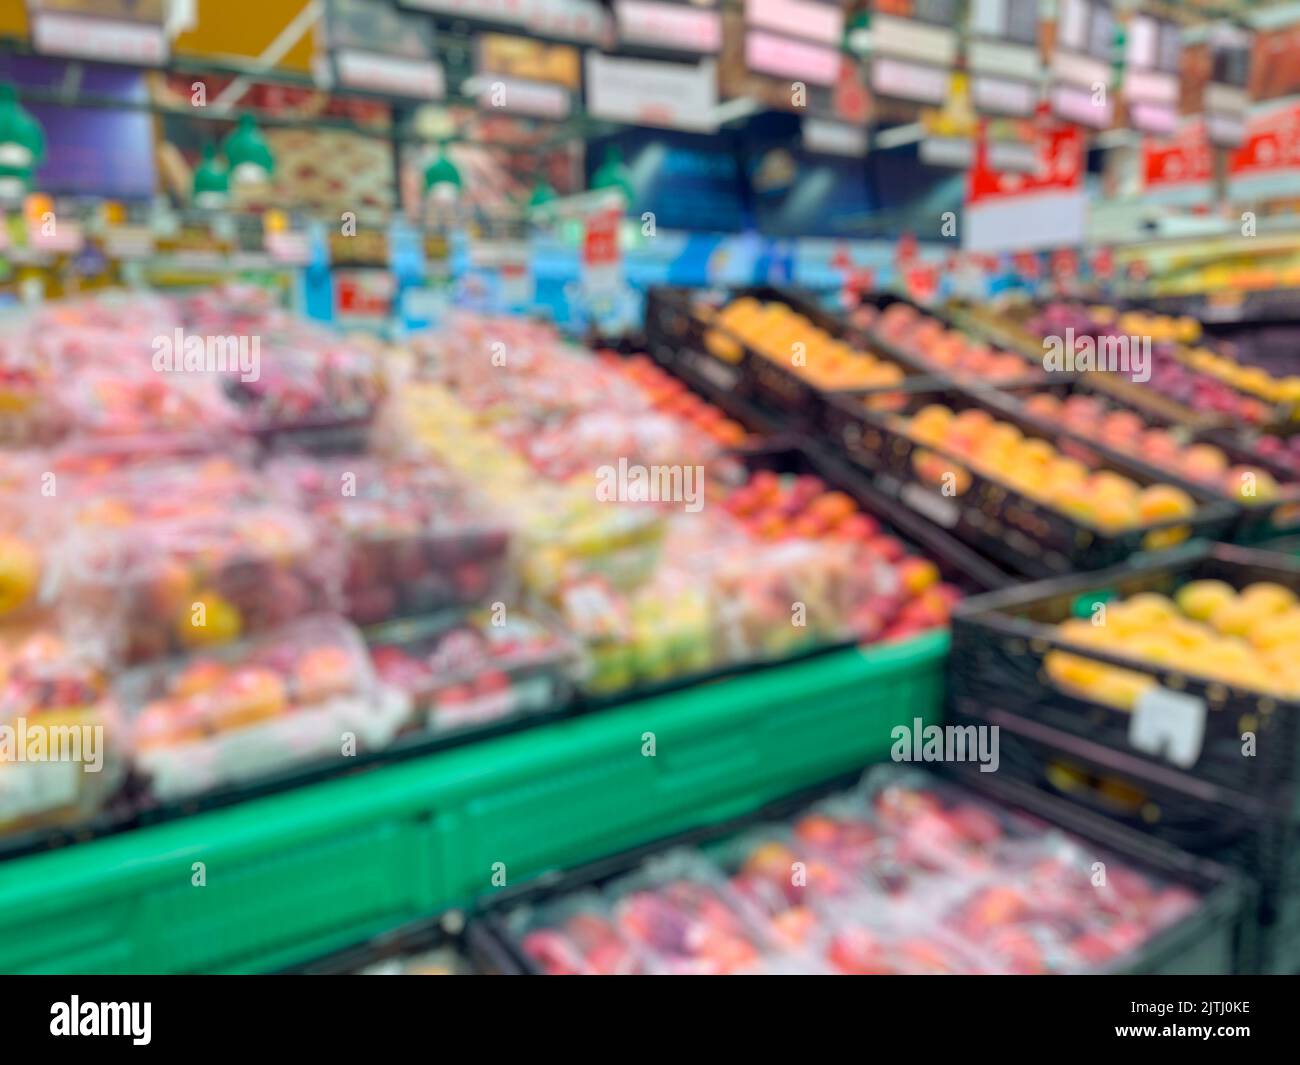 Résumé embrouillé des allées de fruits de supermarché pour le fond. - photo de stock Banque D'Images